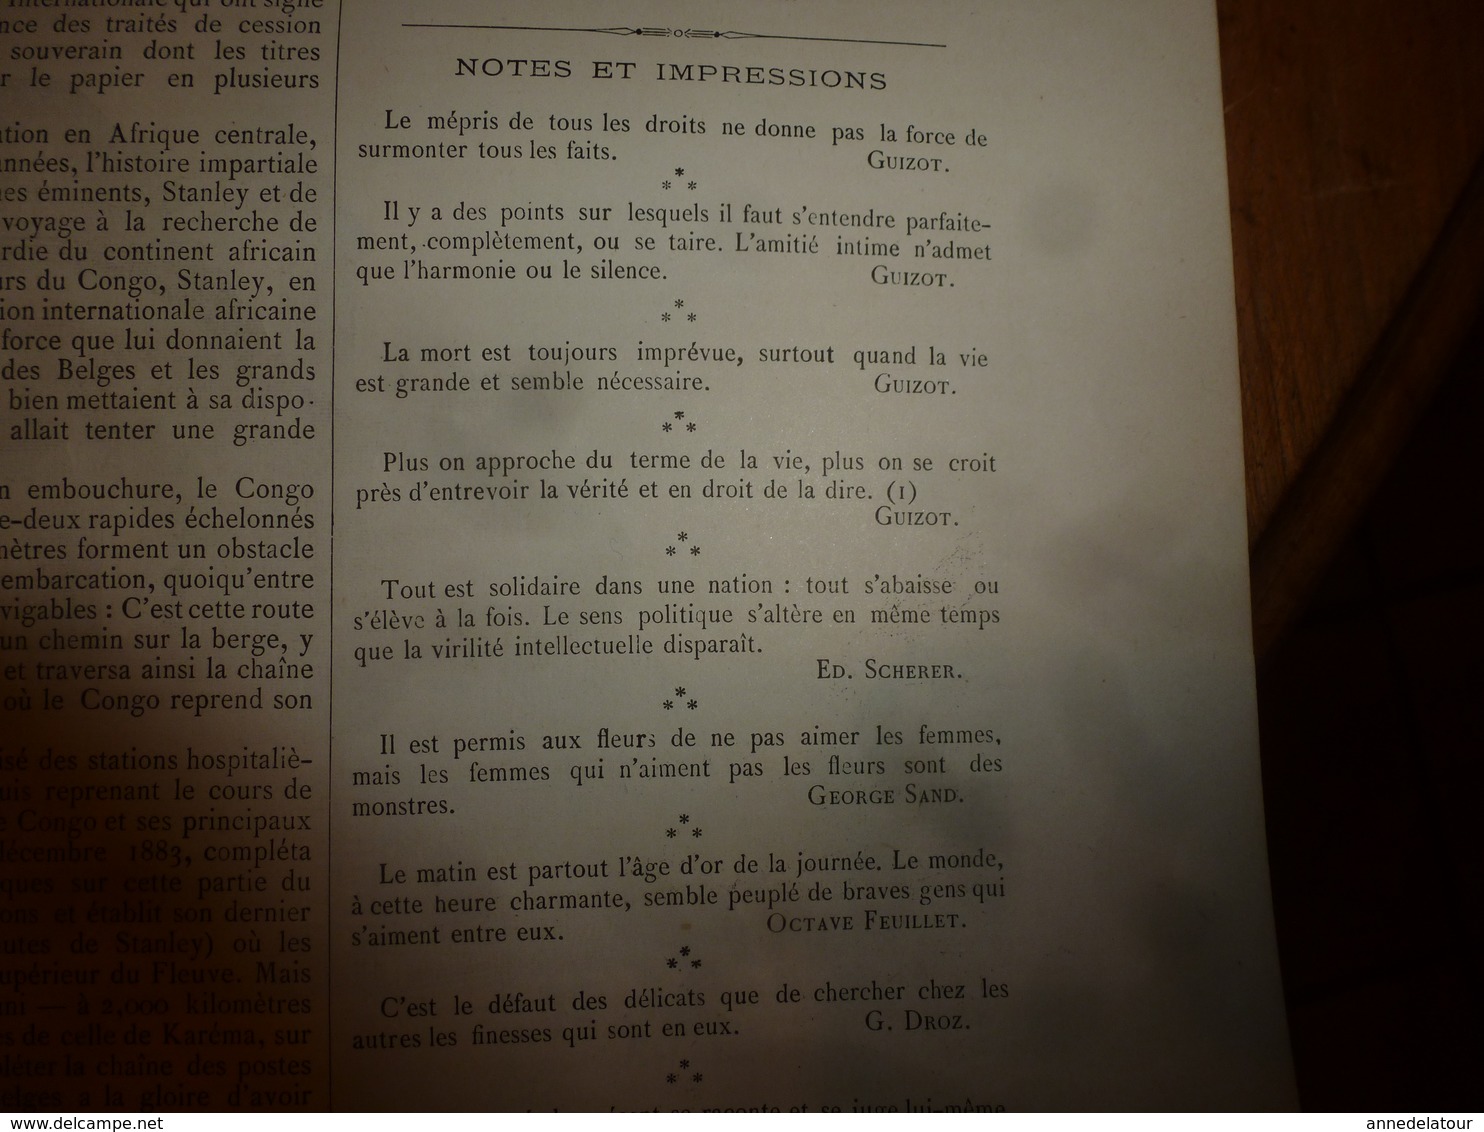 1884 L'ILLUSTRATION: Les fêtes de POMPEÏ (important documentaire texte et gravures); Congo(Vivi,Houssas,etc )etc